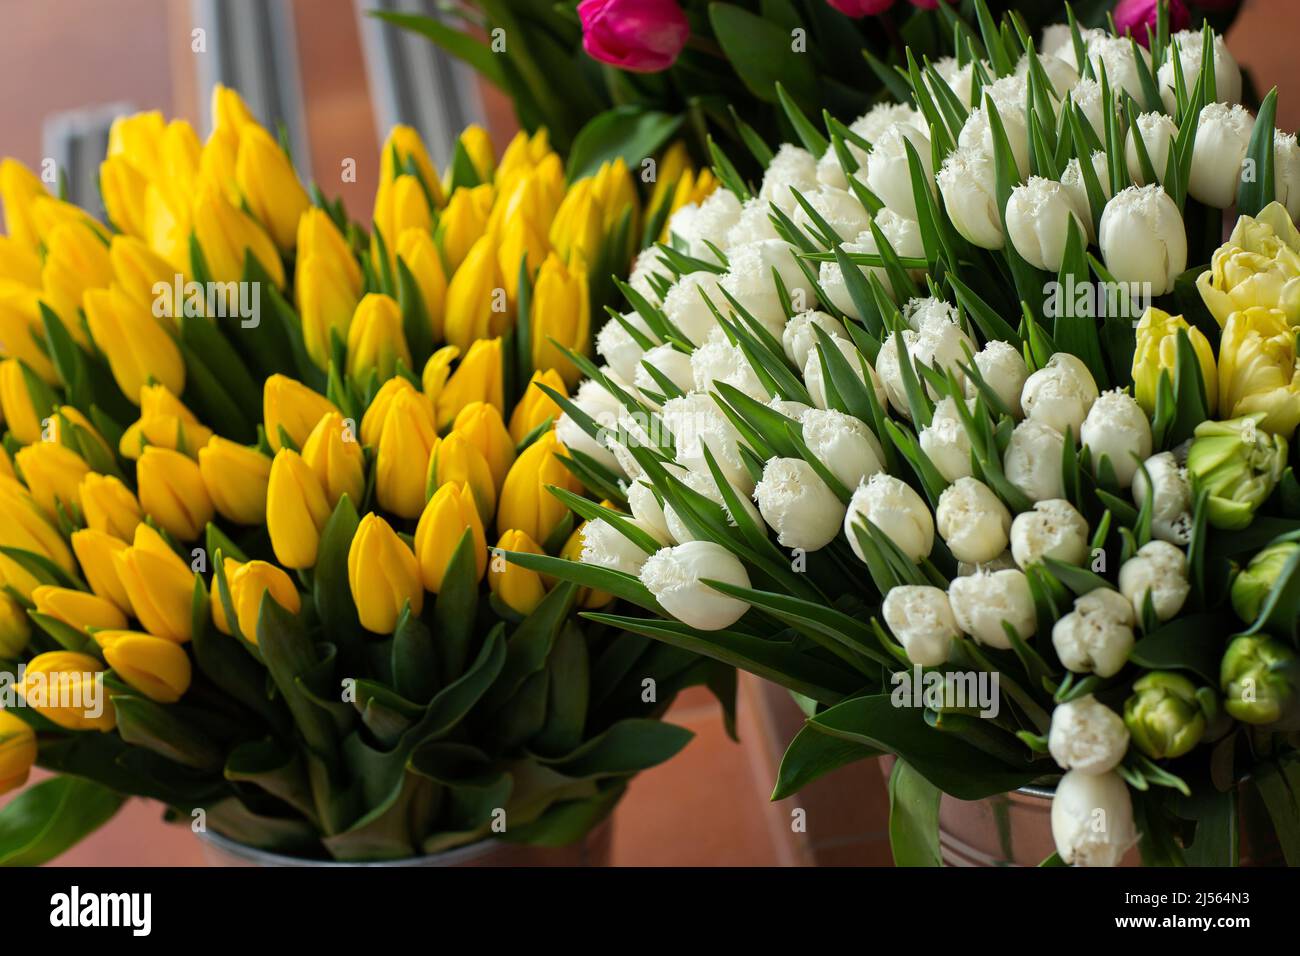 Viele verschiedene Farben auf dem Standtisch im Blumenladen. Präsentieren. Hintergrund der Mischung aus Blumen. Schöne Blumen für Katalog oder Online-Shop. Fl Stockfoto